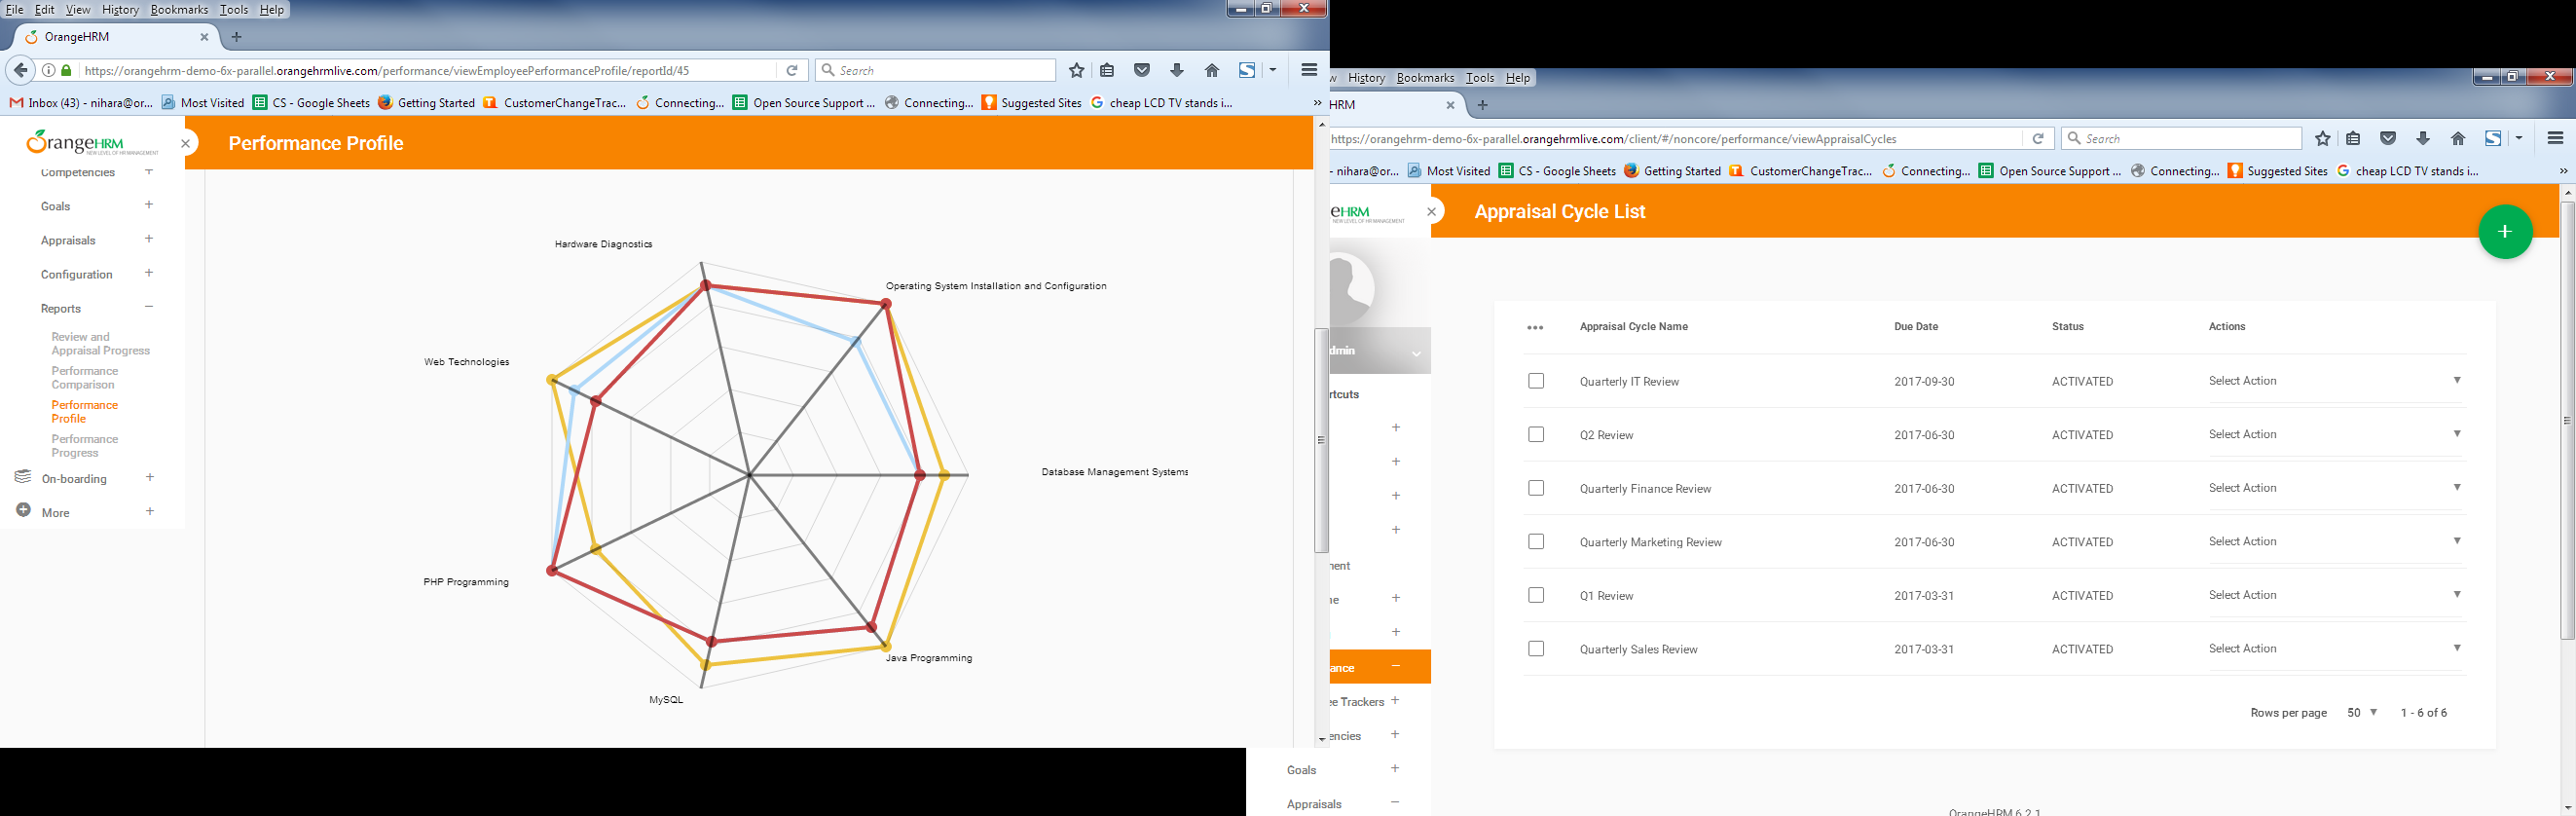 OrangeHRM Software - Performance Management analytics